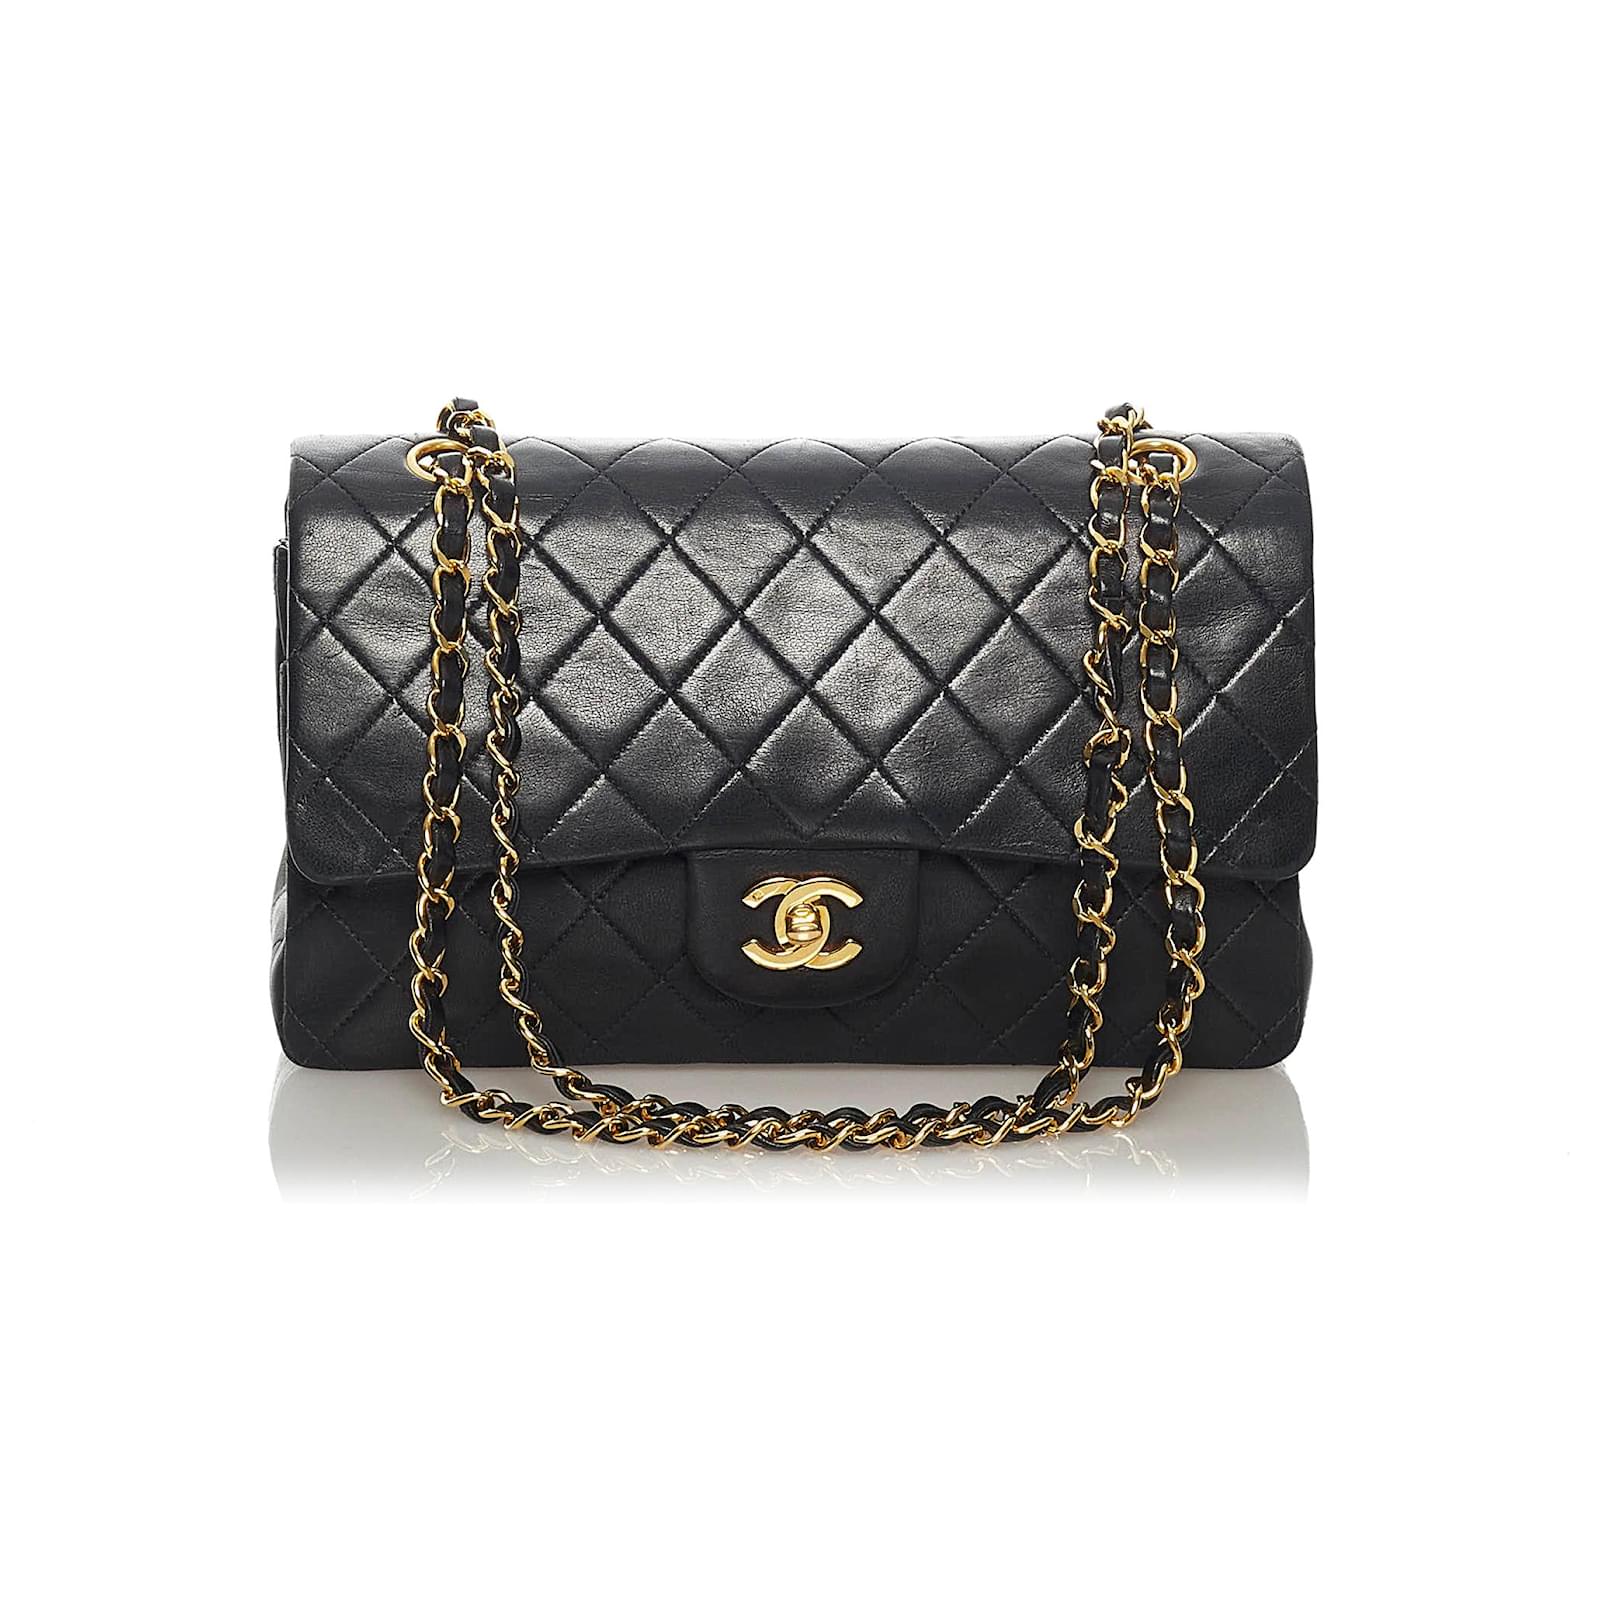 Bolso Chanel Jumbo Con Solapa Precio | scatshop.com